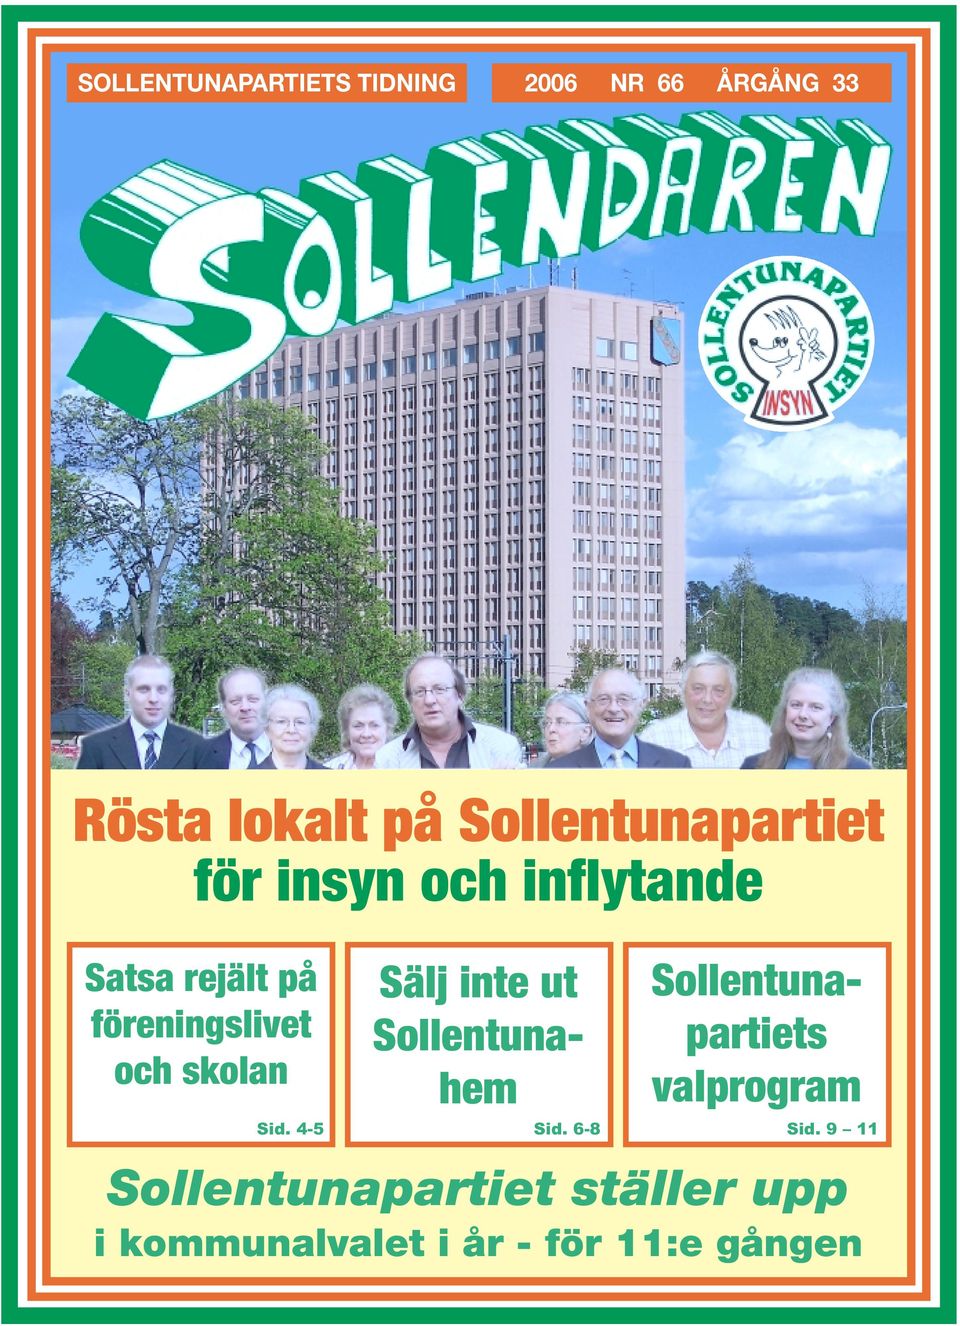 och skolan Sälj inte ut Sollentunahem Sollentunapartiets valprogram Sid.